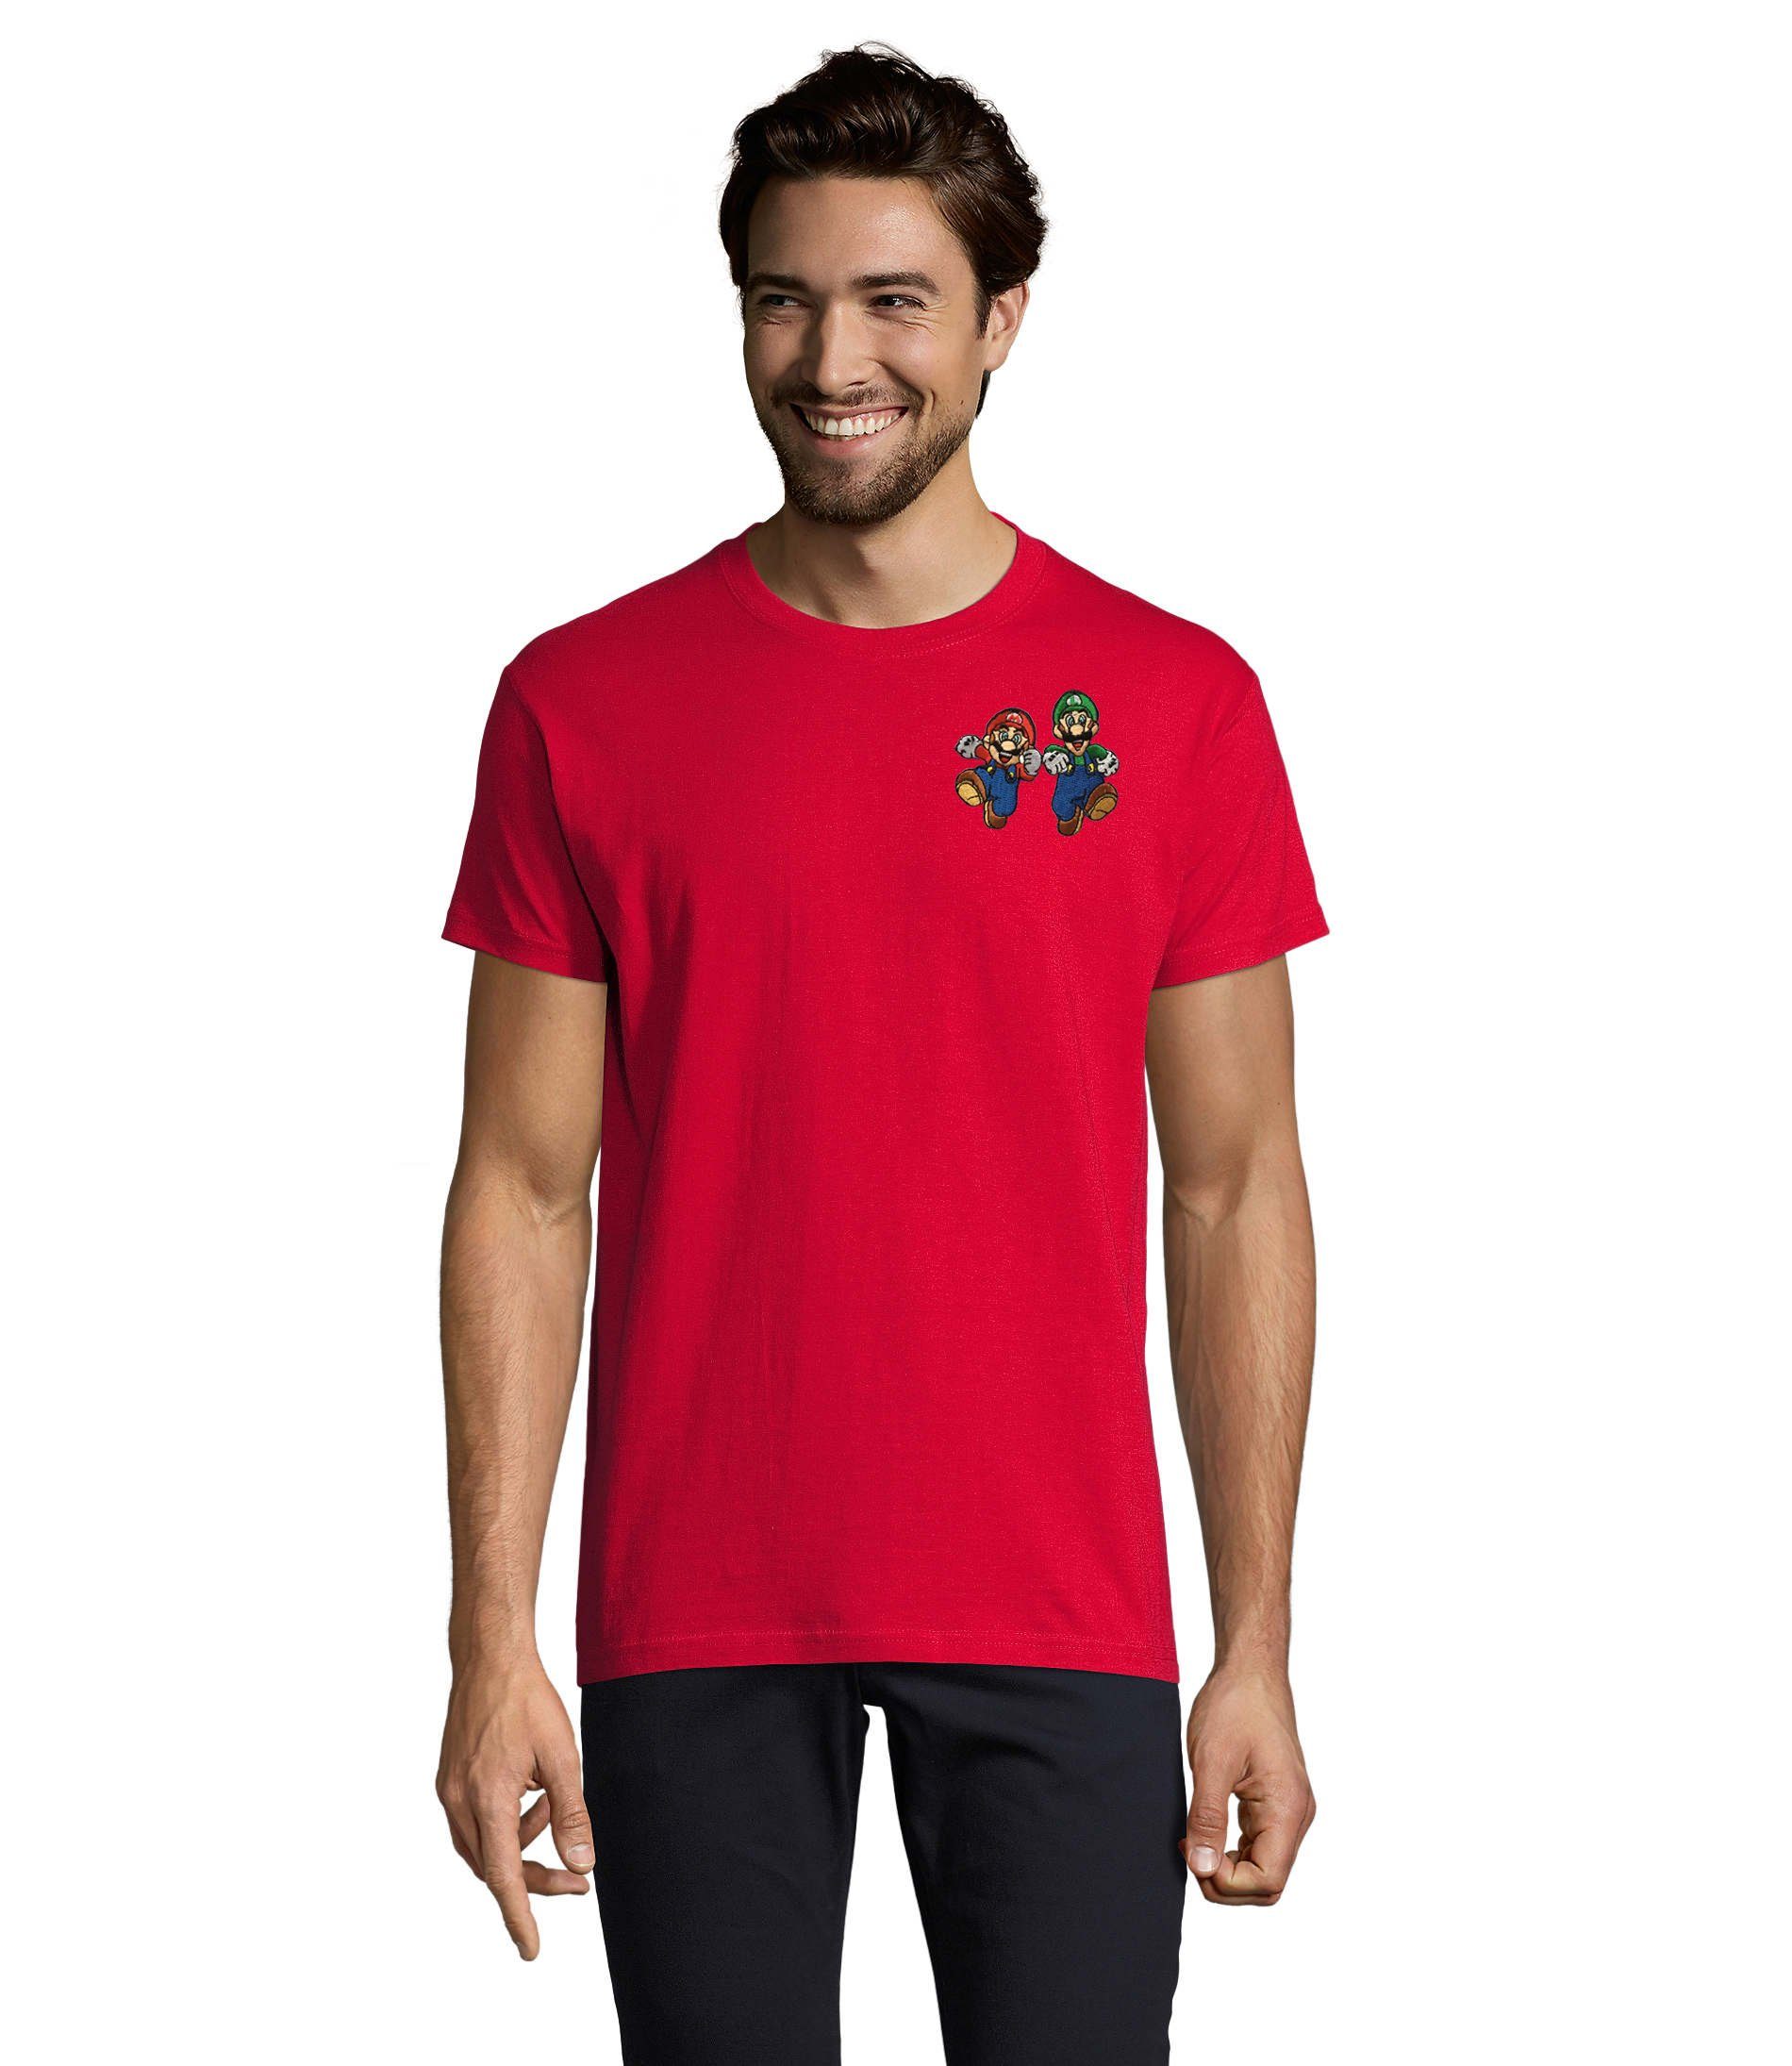 Blondie & Brownie T-Shirt Herren Mario & Luigi Brust Stick Peach Konsole Nintendo Gaming bestickt Rot